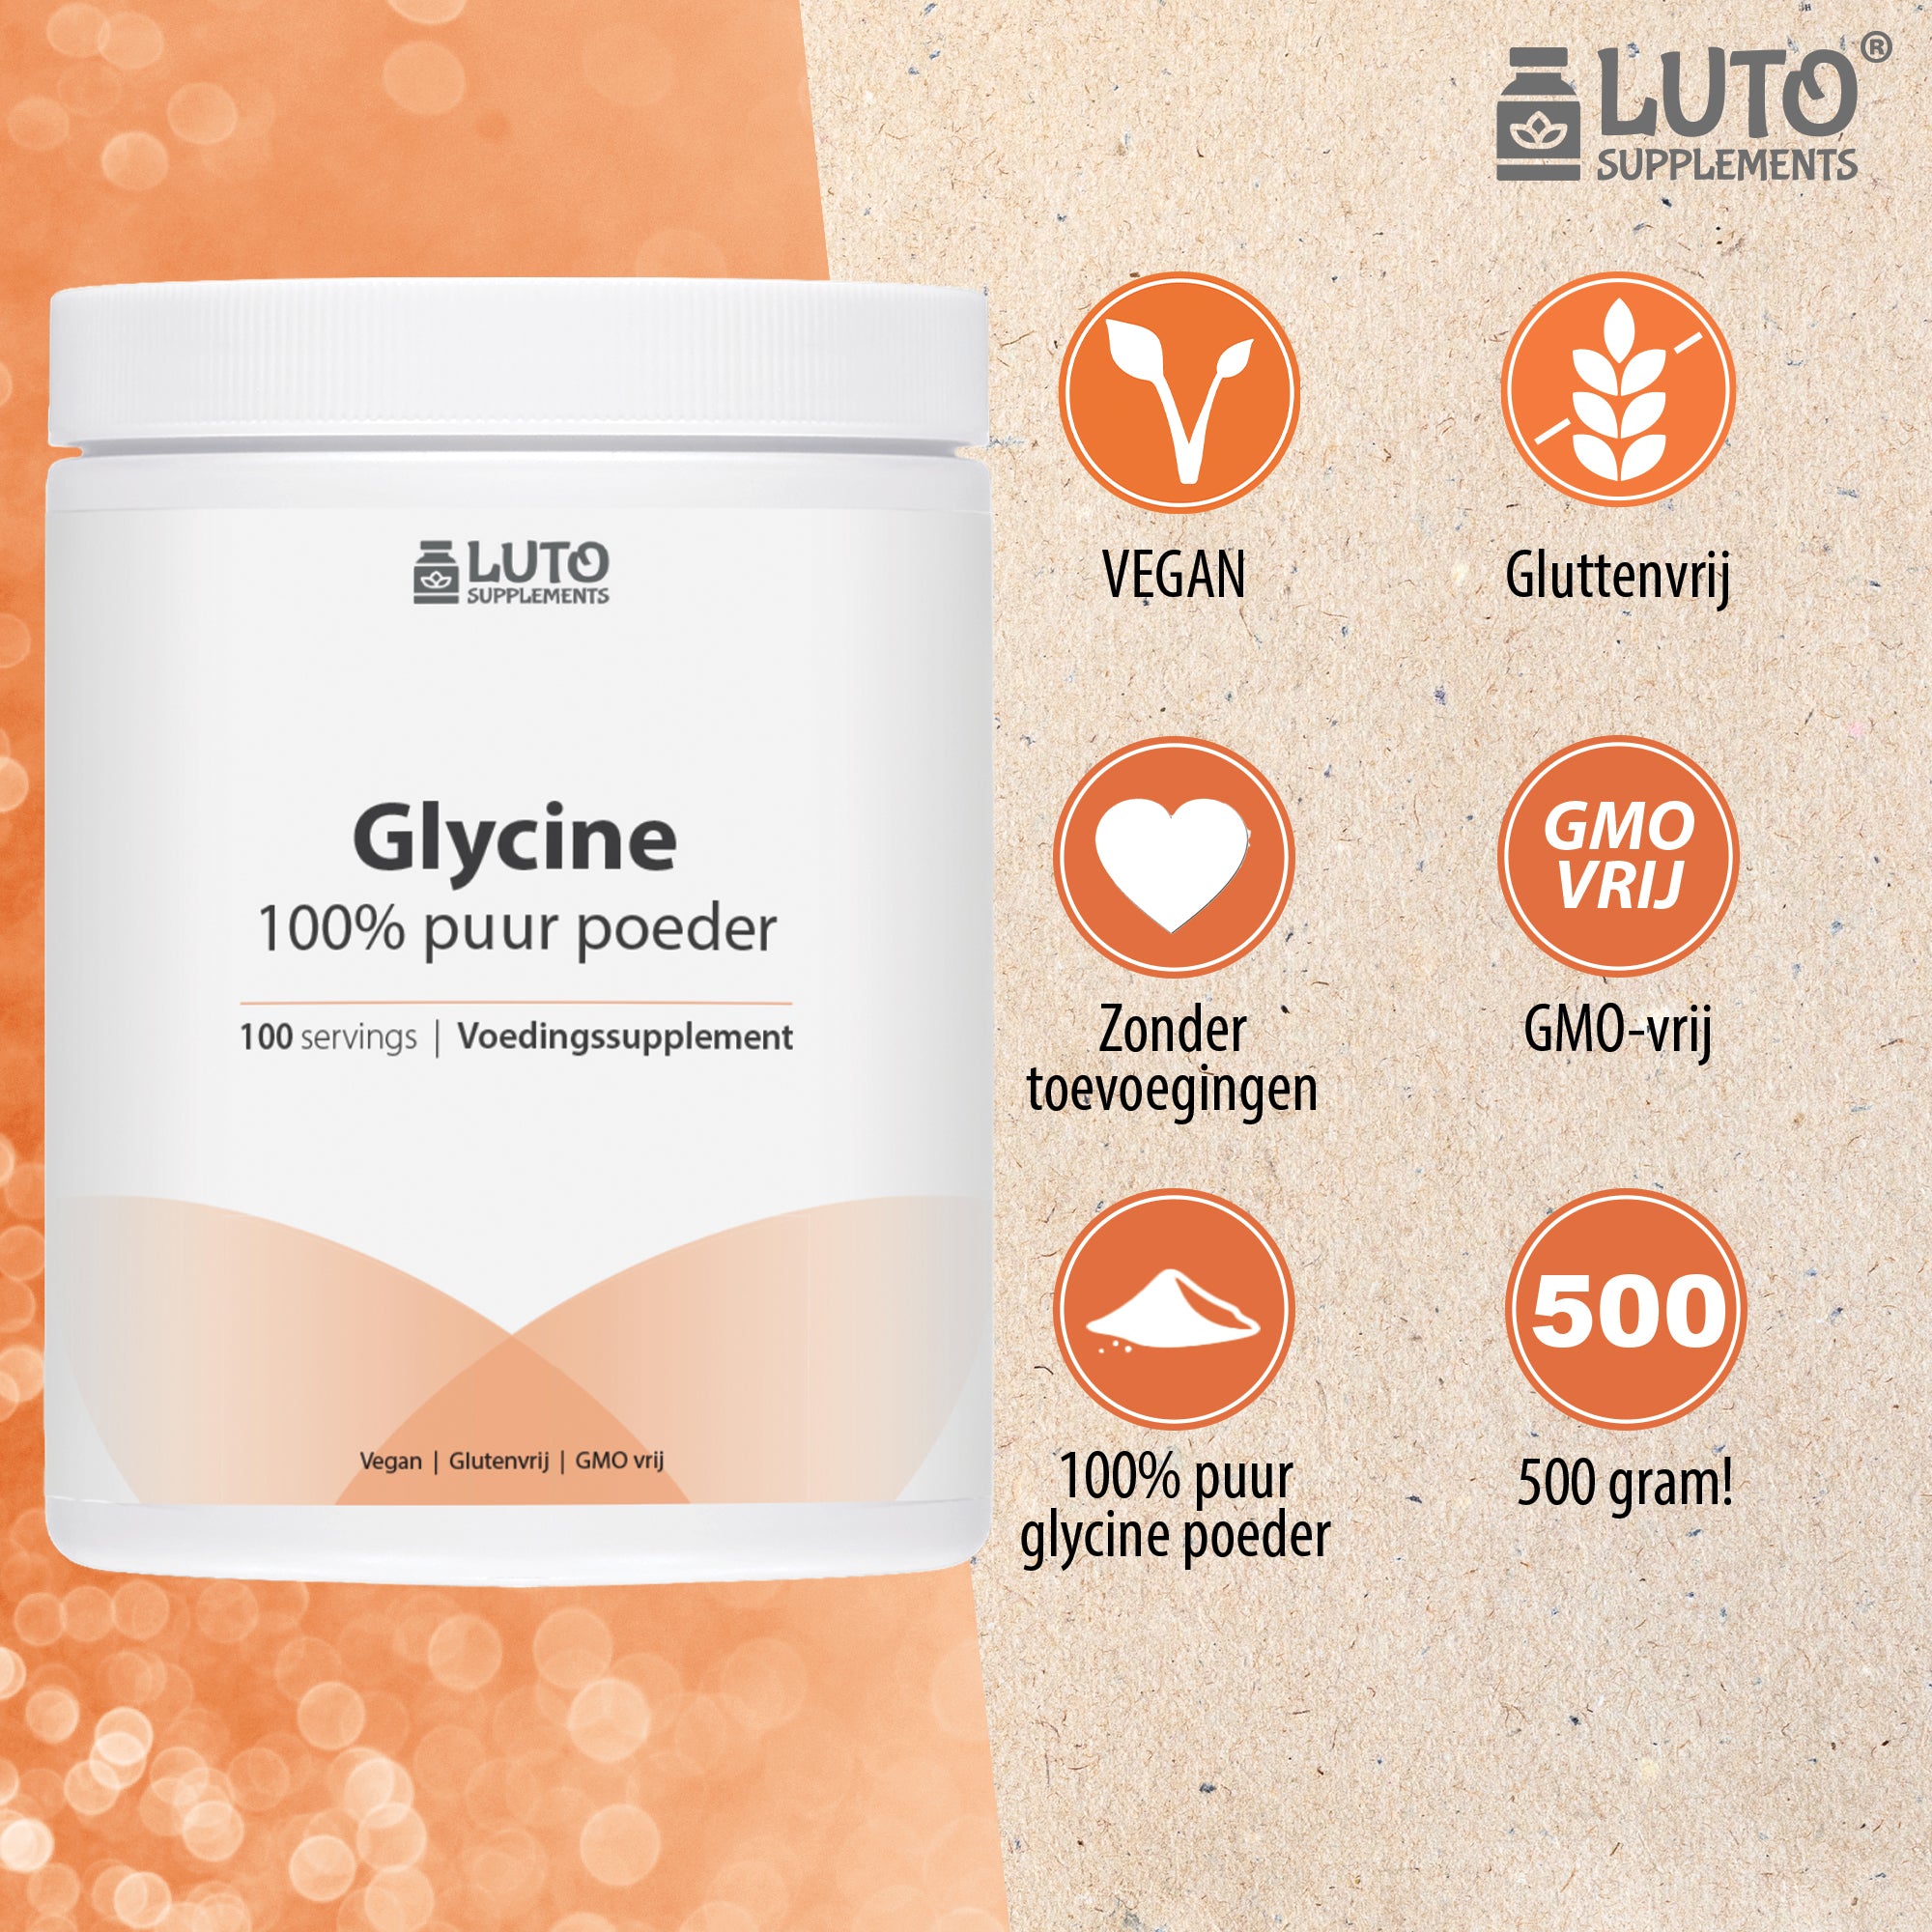 Glycine Puur | 500 gram zuivere poeder | 100 servings| geen toevoegingen | Luto Supplements